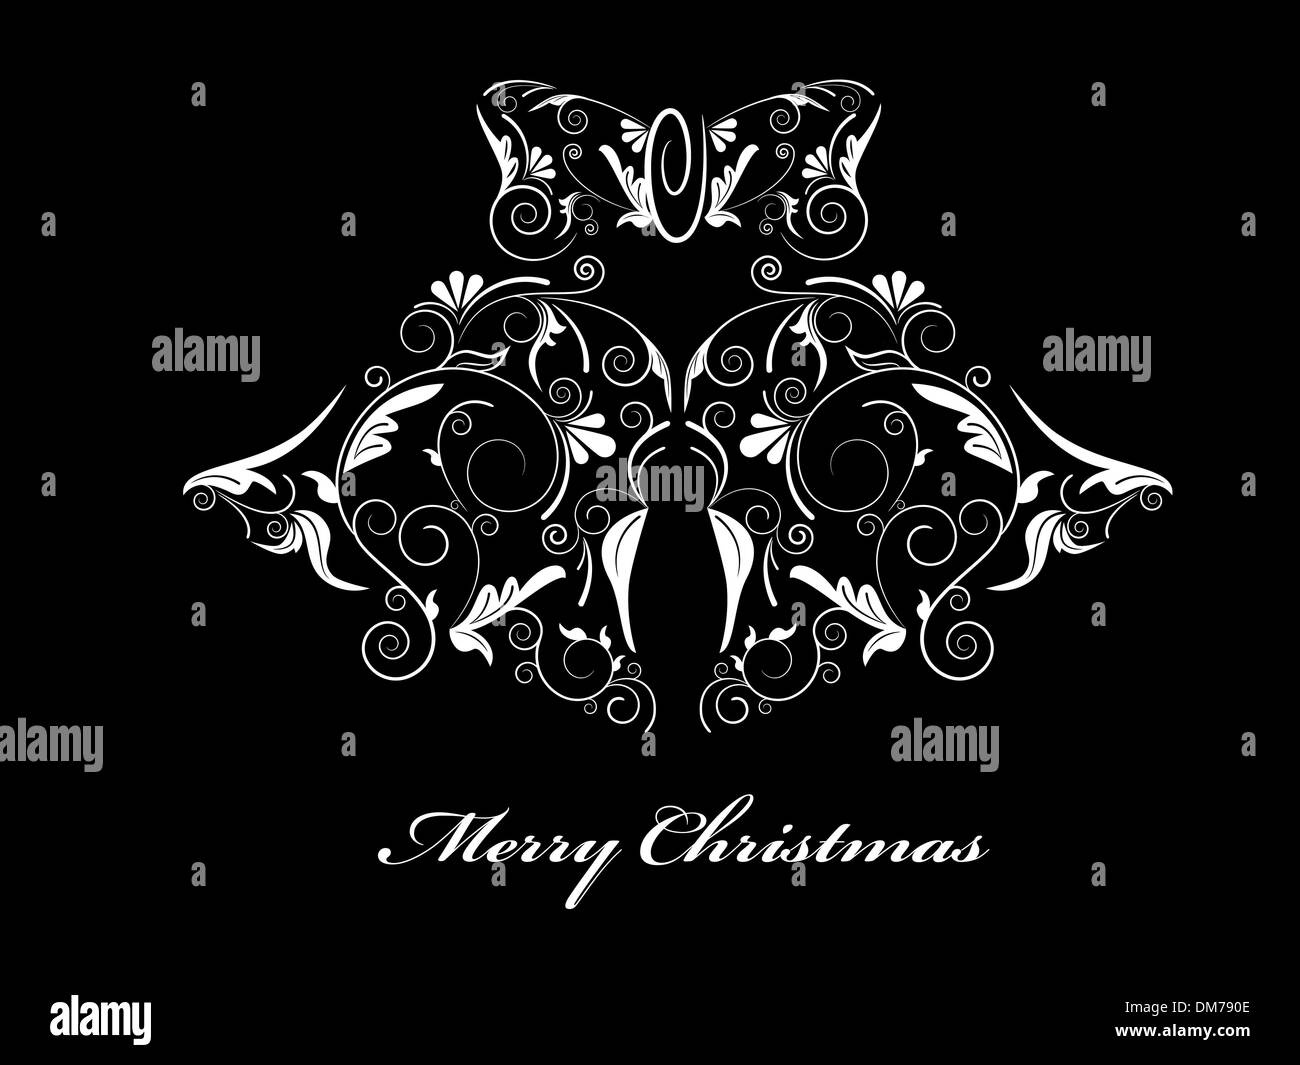 Christmas card Stock Image